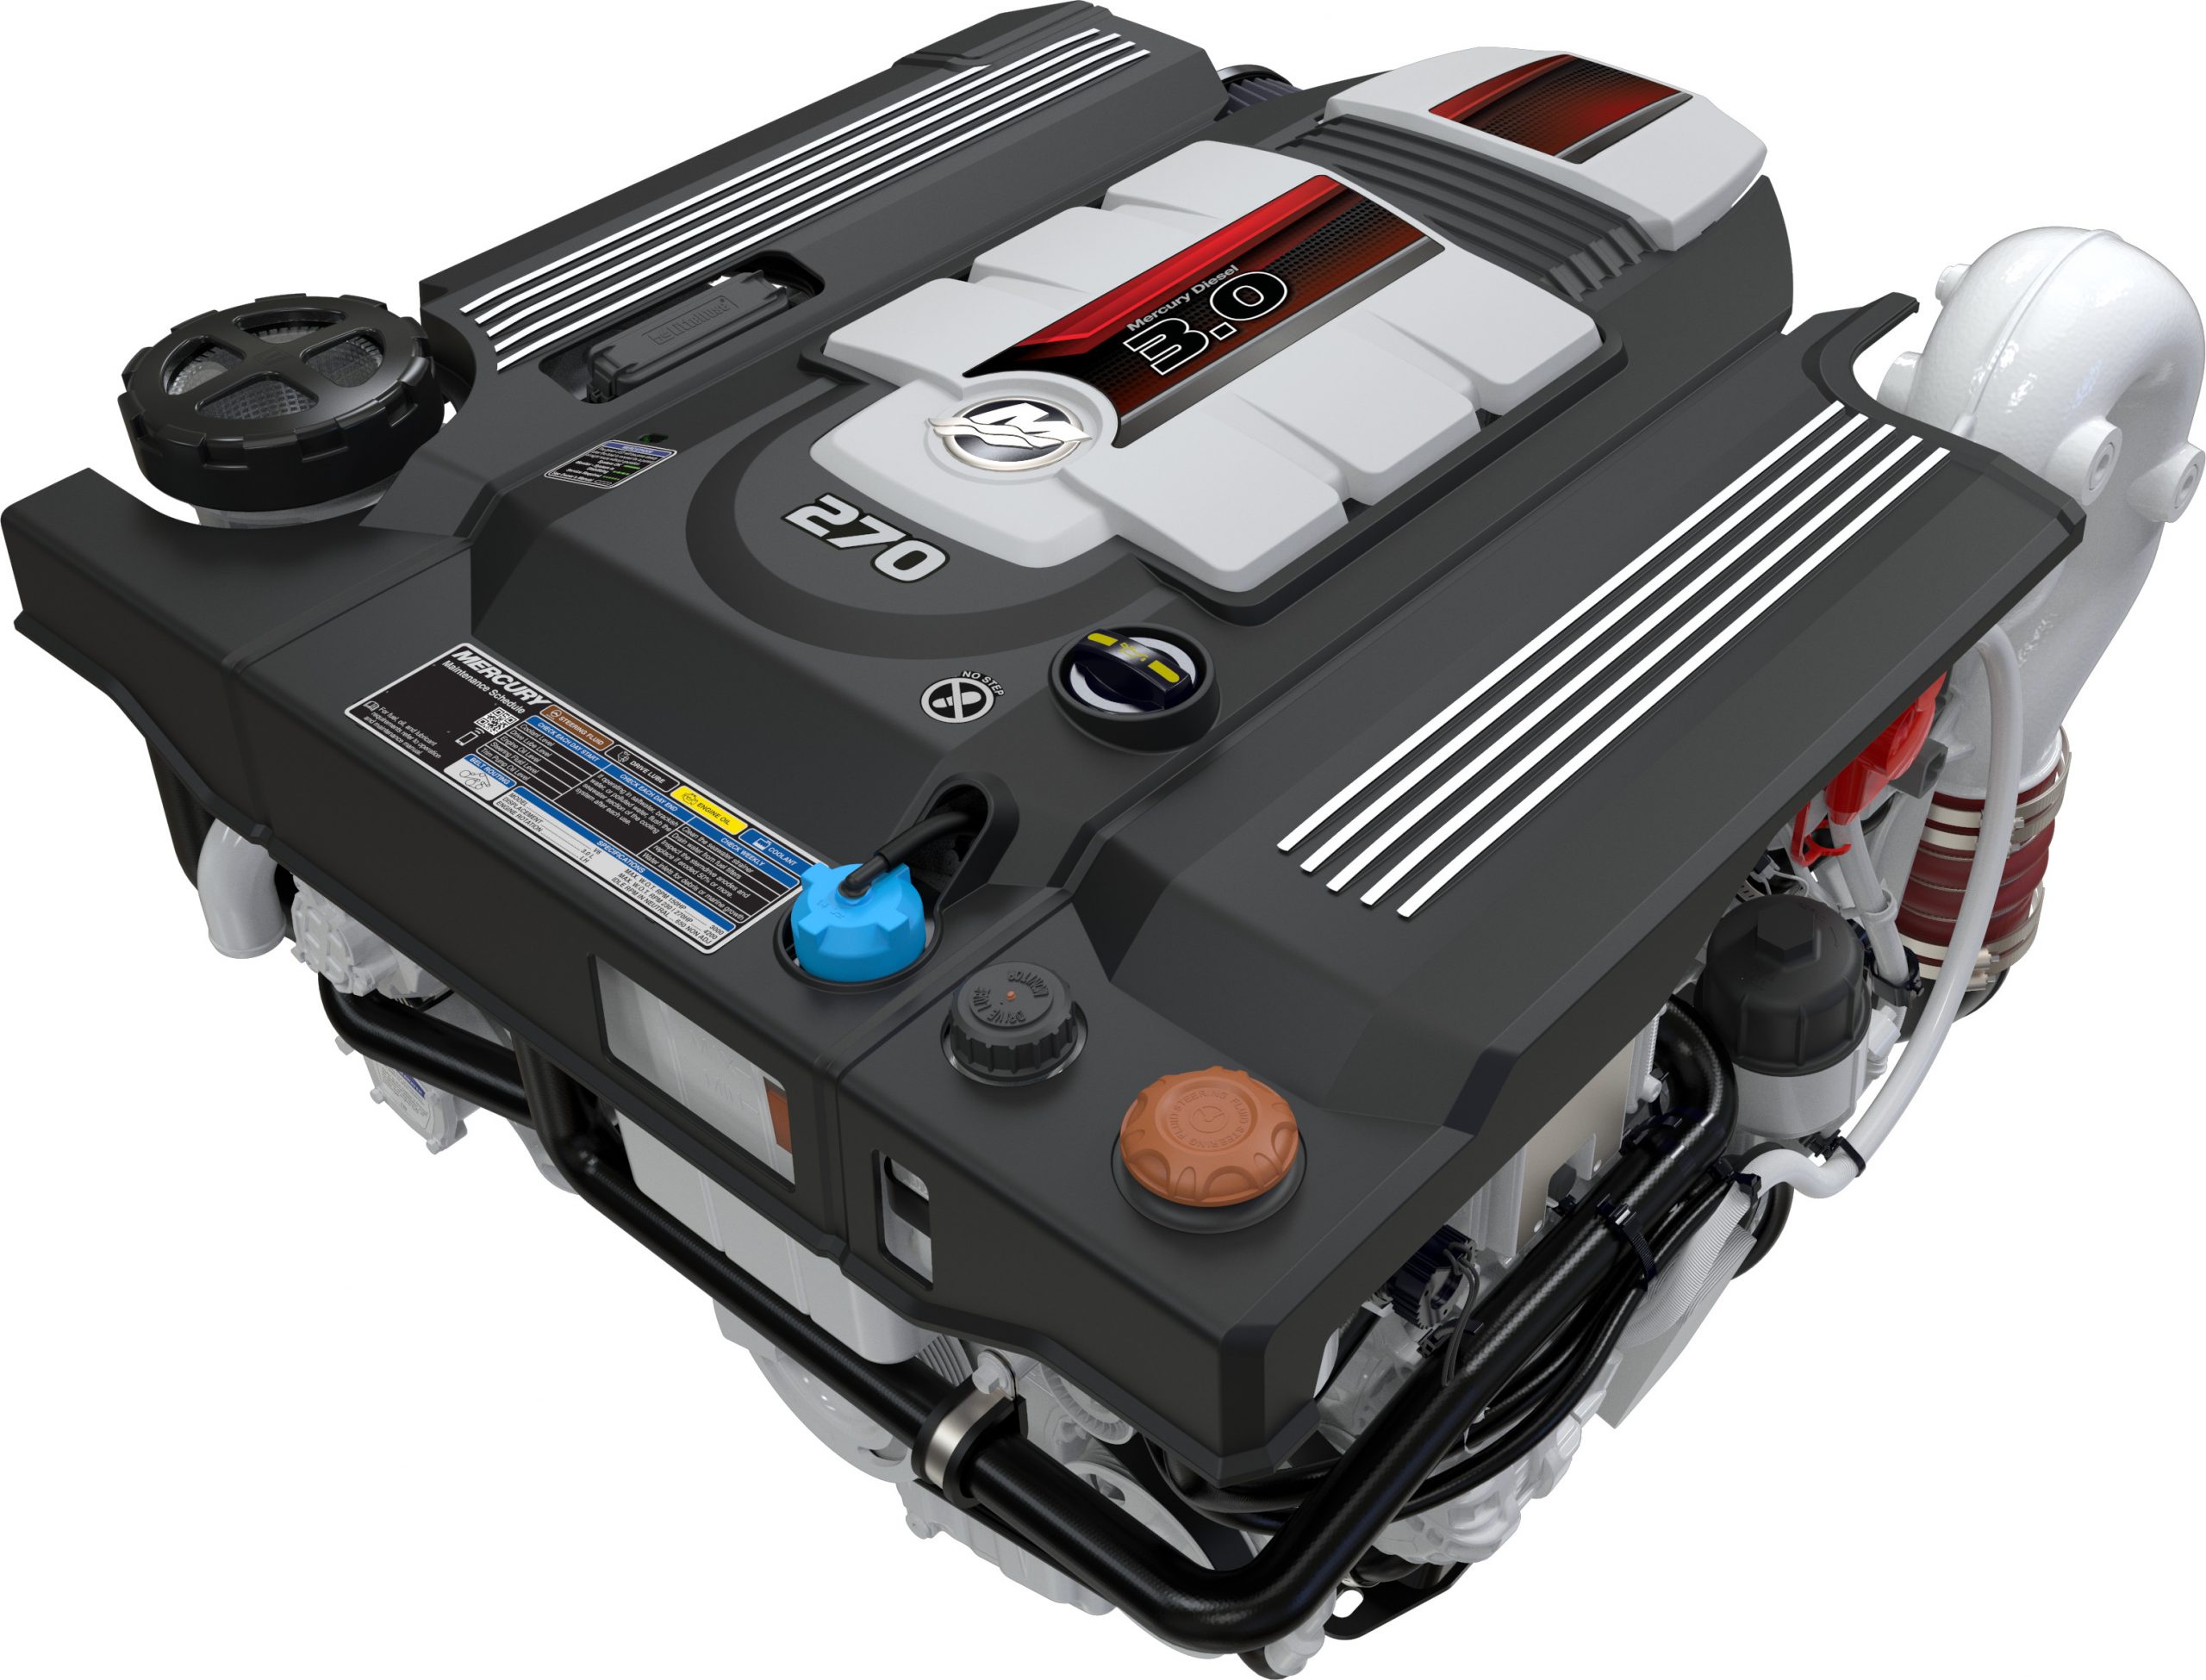 Mercury Diesel 3.0L 150-270hp engines introduced at SIBS